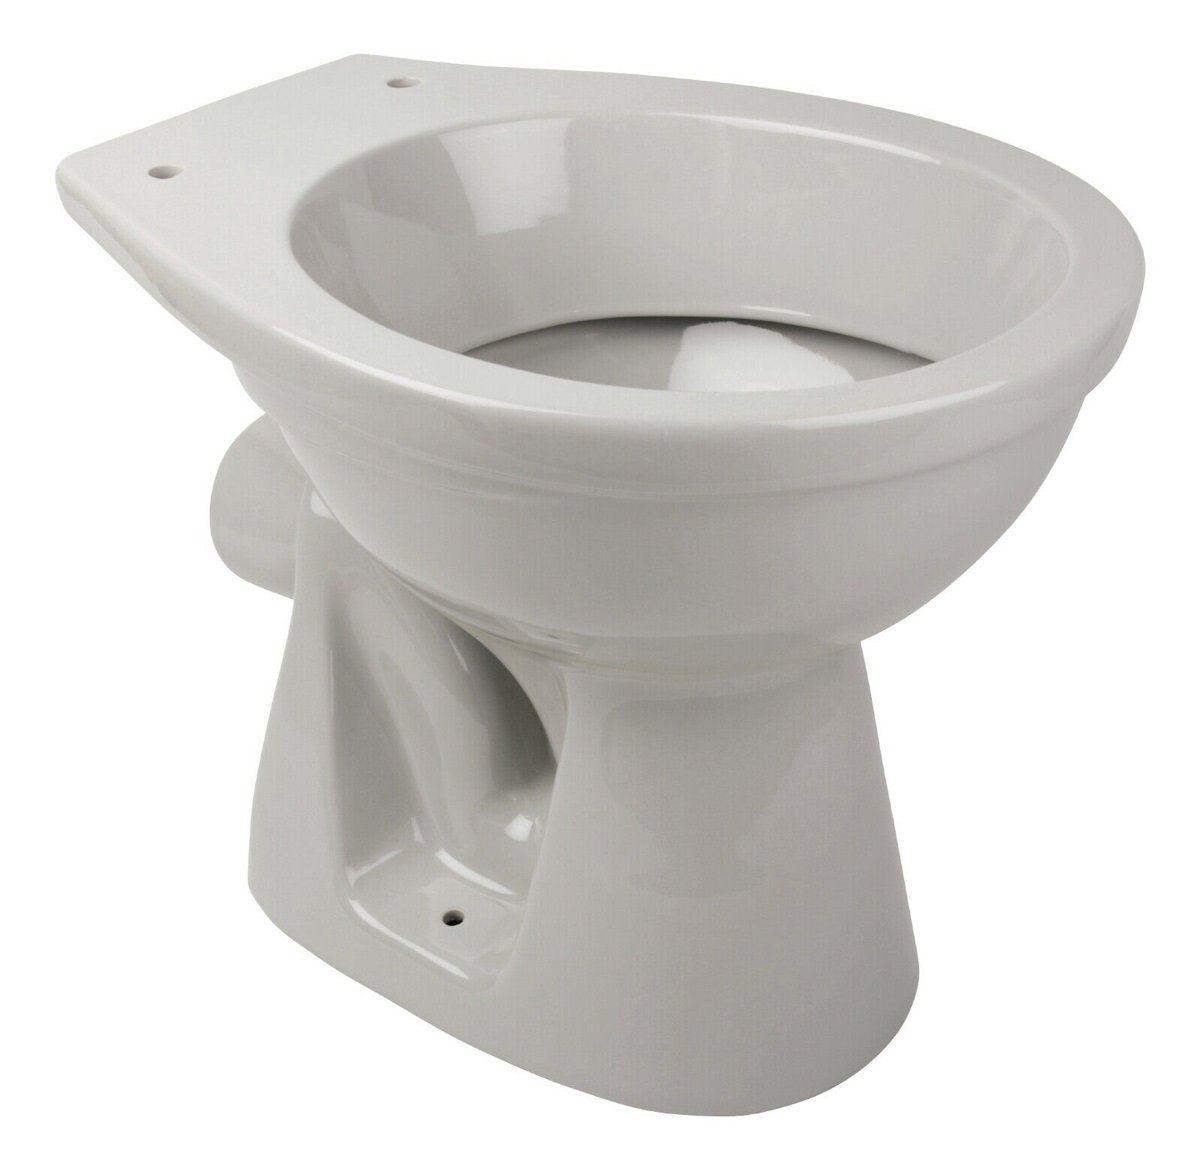 Belvit Tiefspül-WC BV-EW3002, bodenstehend, Abgang waagerecht, Stand-WC Tiefspüler Abgang Wand Waagerecht Toilette WC Manhattan